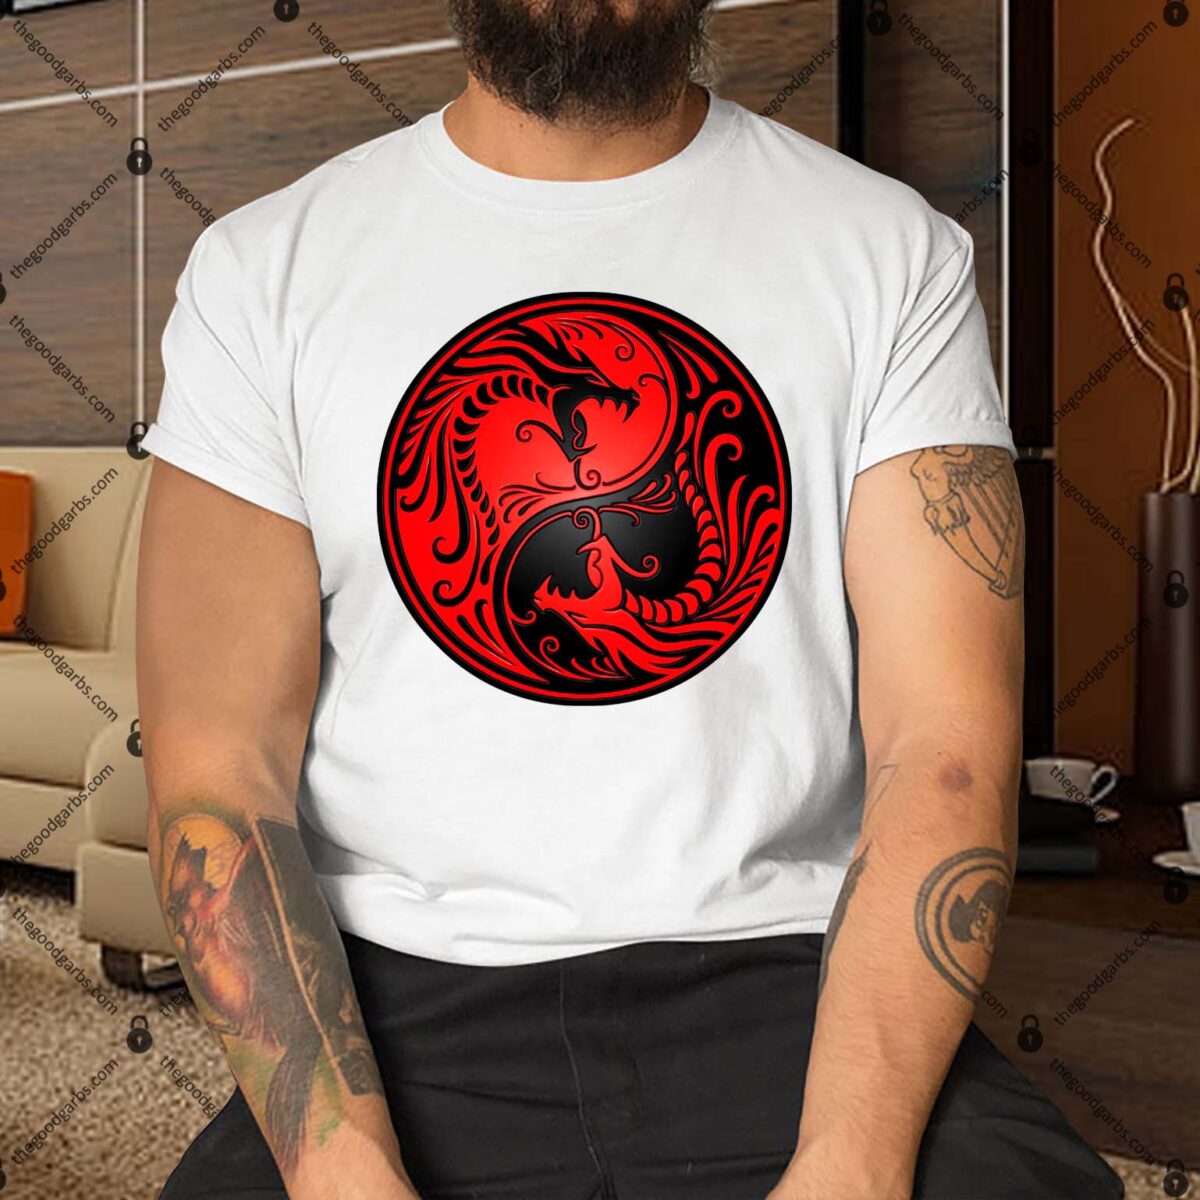 Red and Black Yin Yang Dragons Shirt